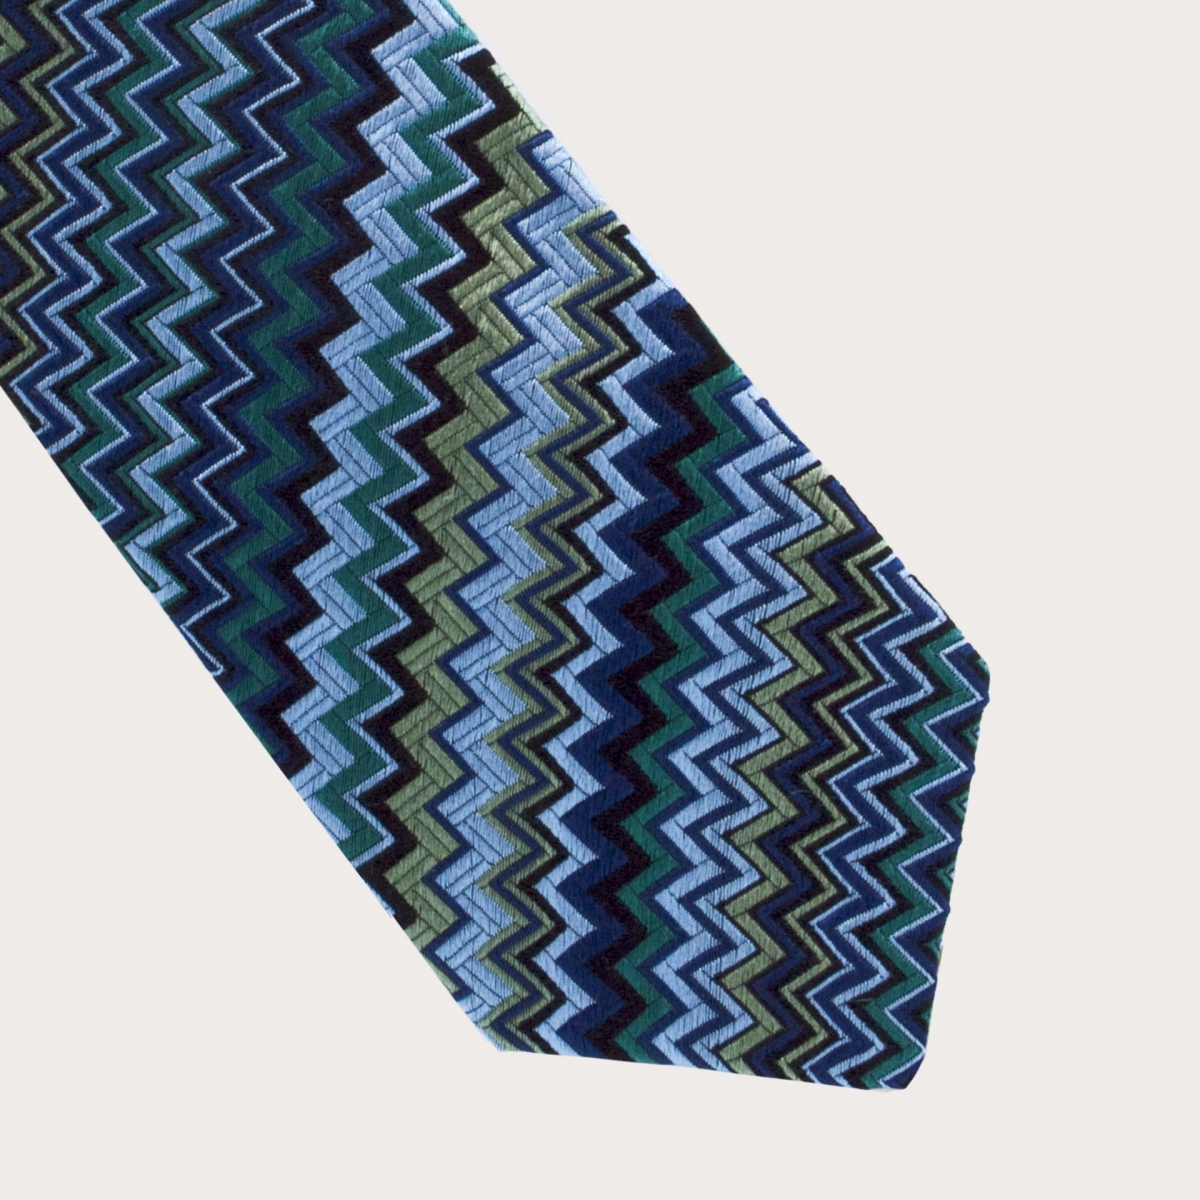 Brucle cravate bleue vagues en soie jacquard